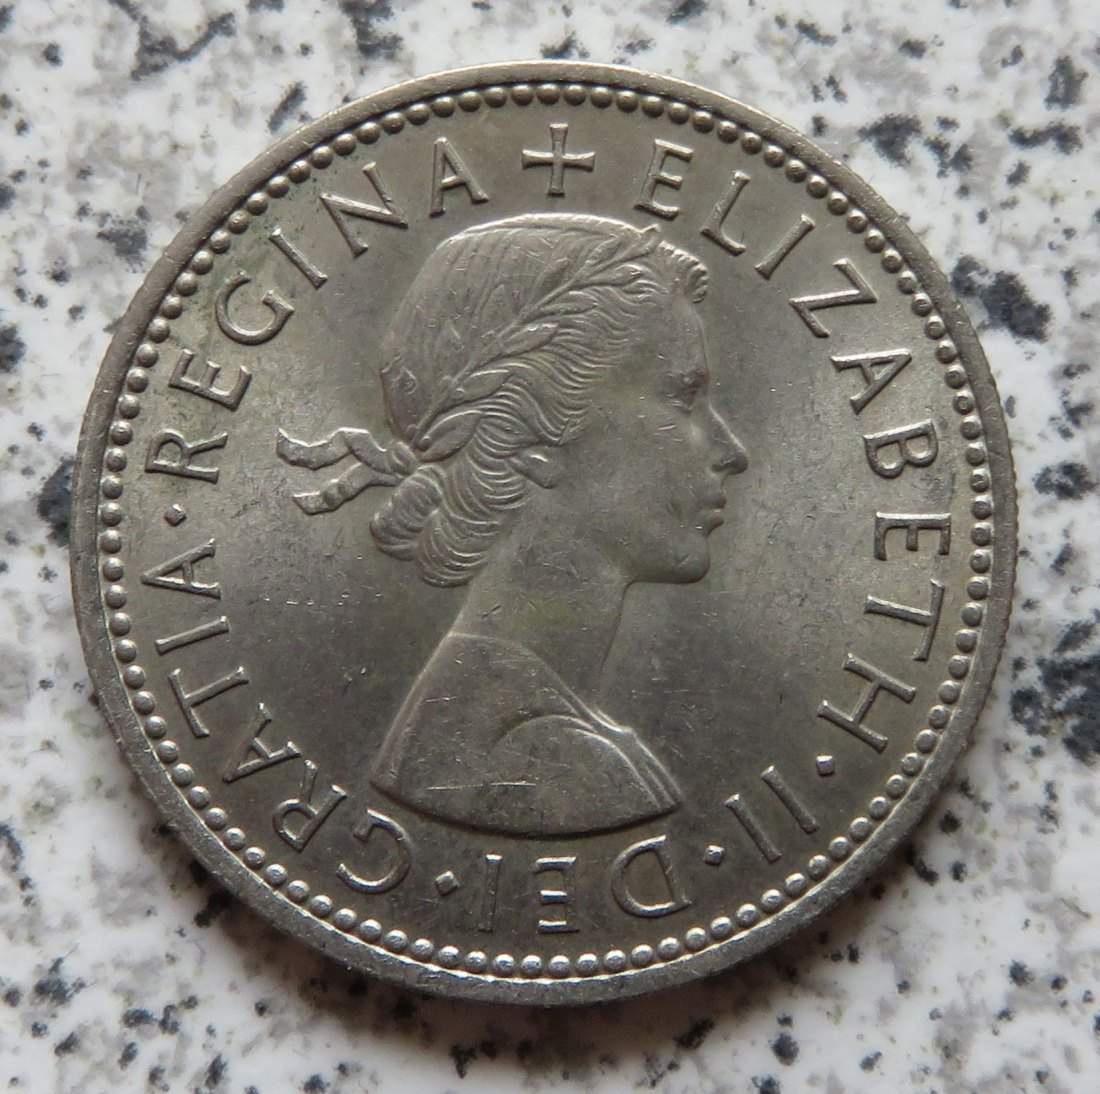  Großbritannien 1 Shilling 1961, Englisch, Erhaltung (2)   